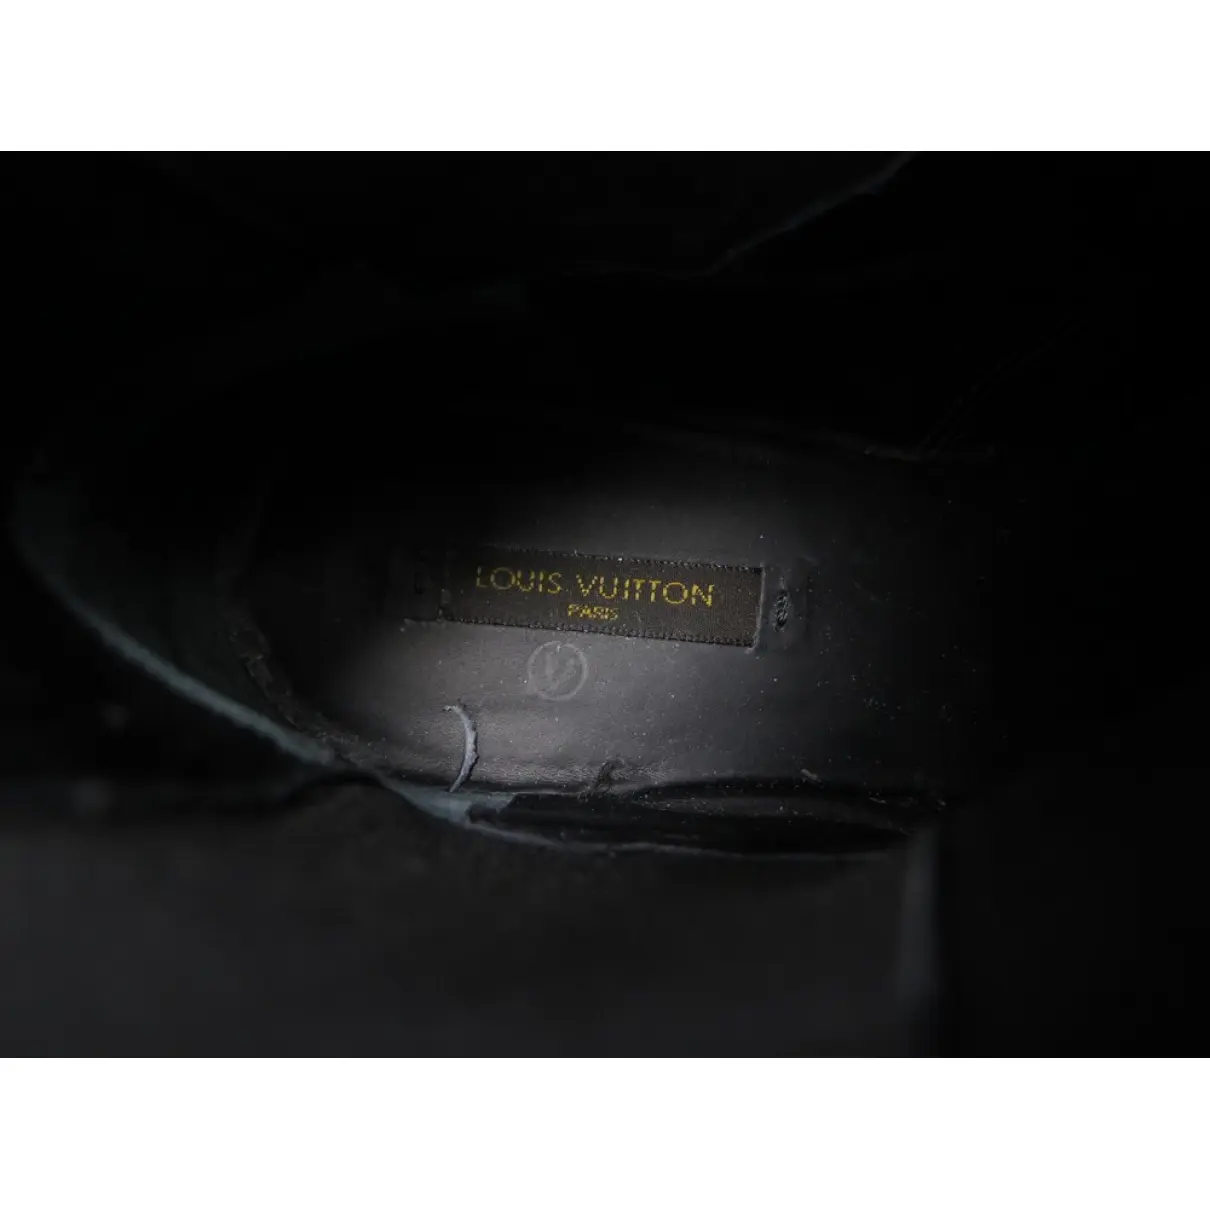 Velvet ankle boots Louis Vuitton